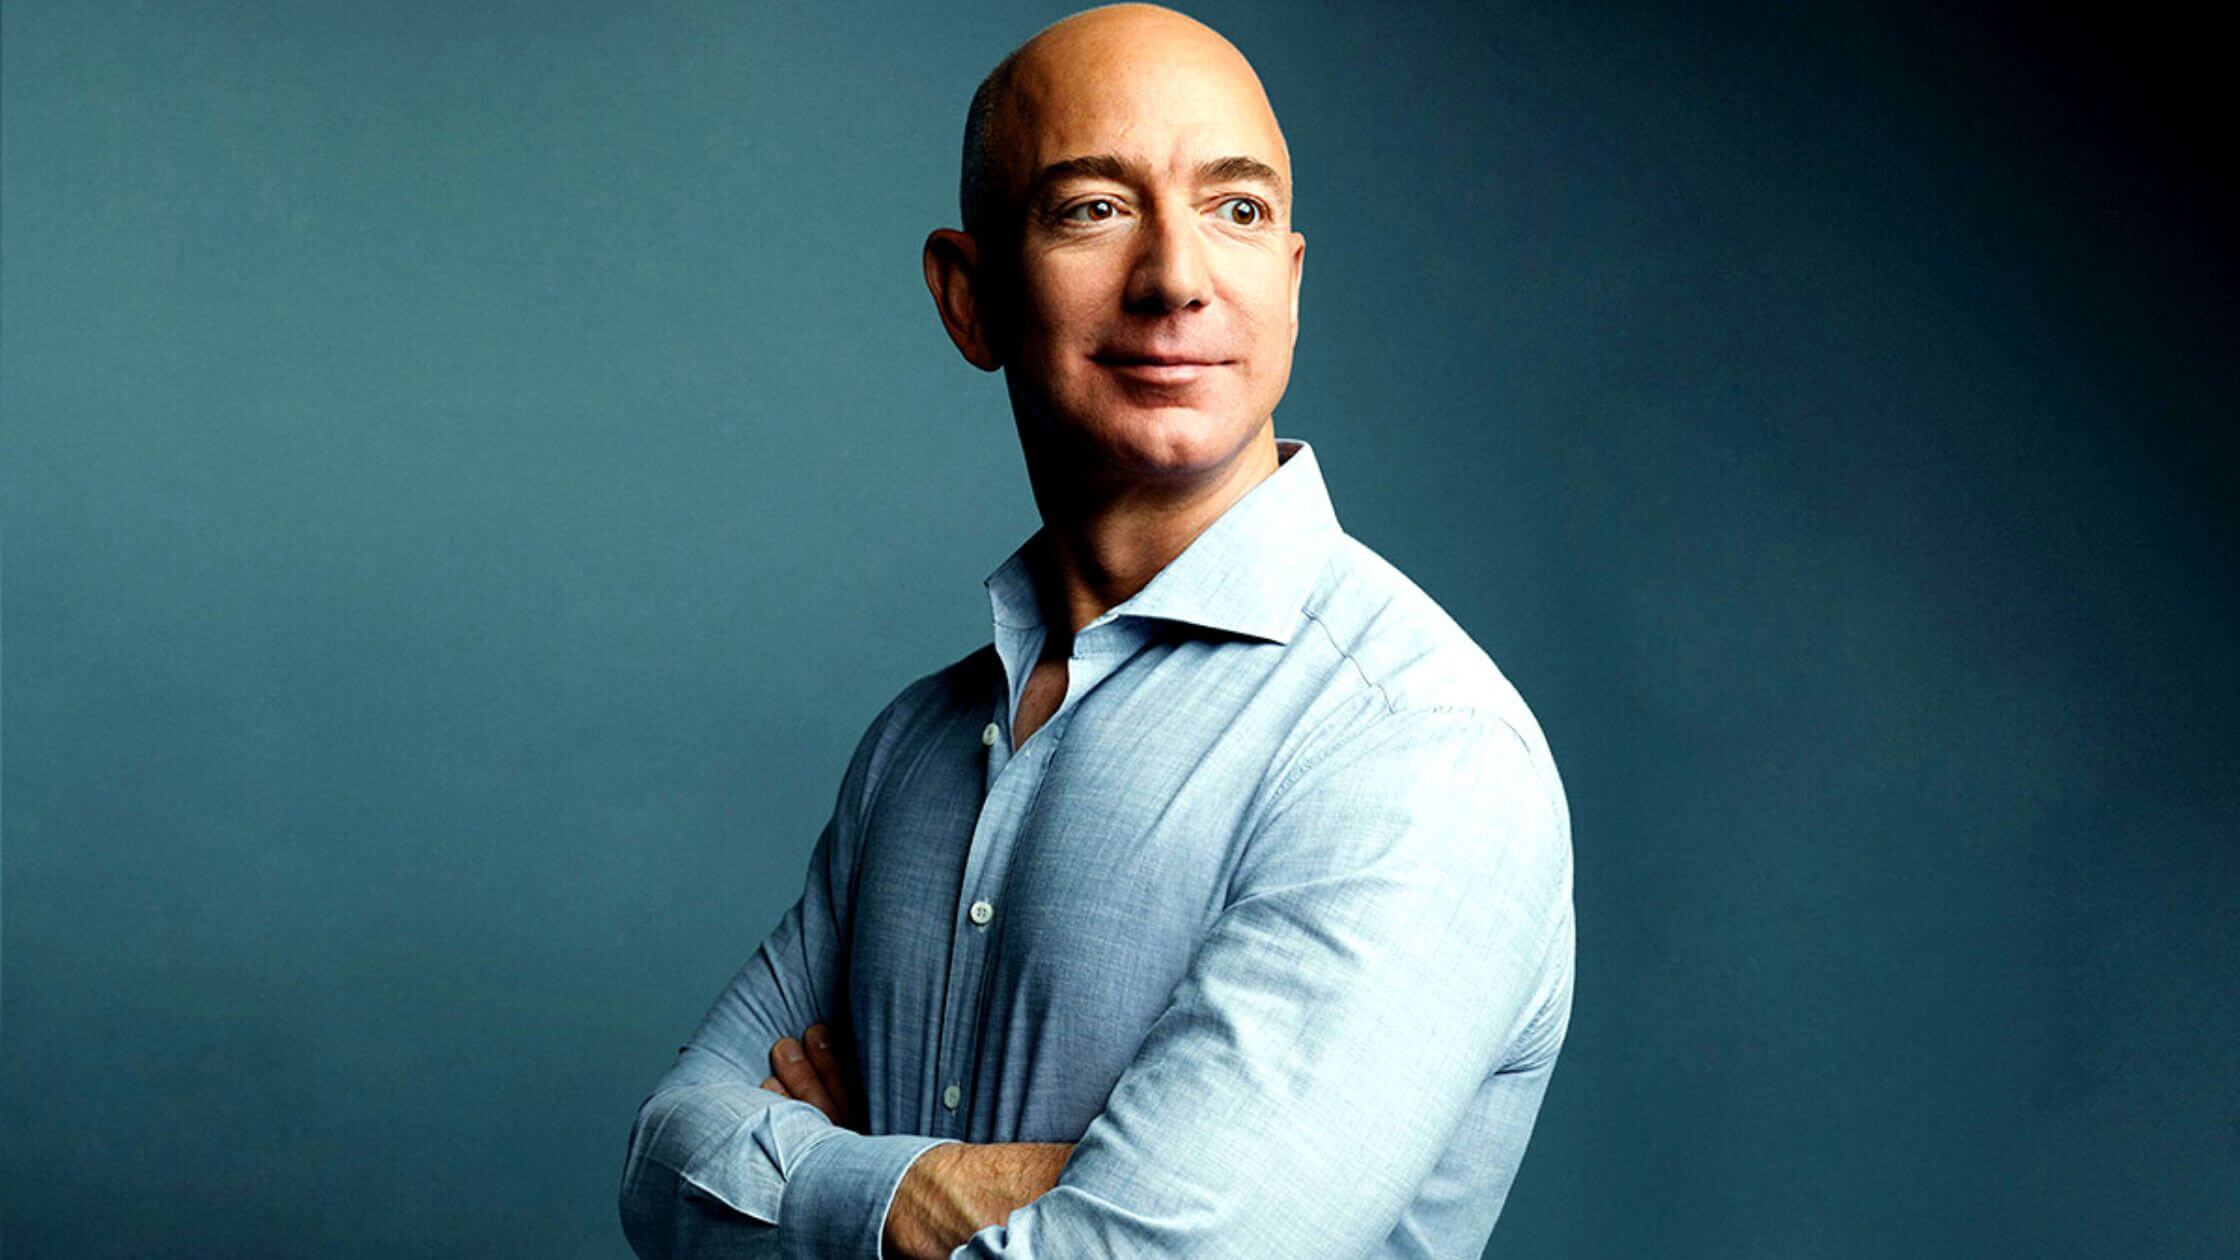 La historia de Jeff Bezos de los libros distopicos a la conquista del espacio 1 1